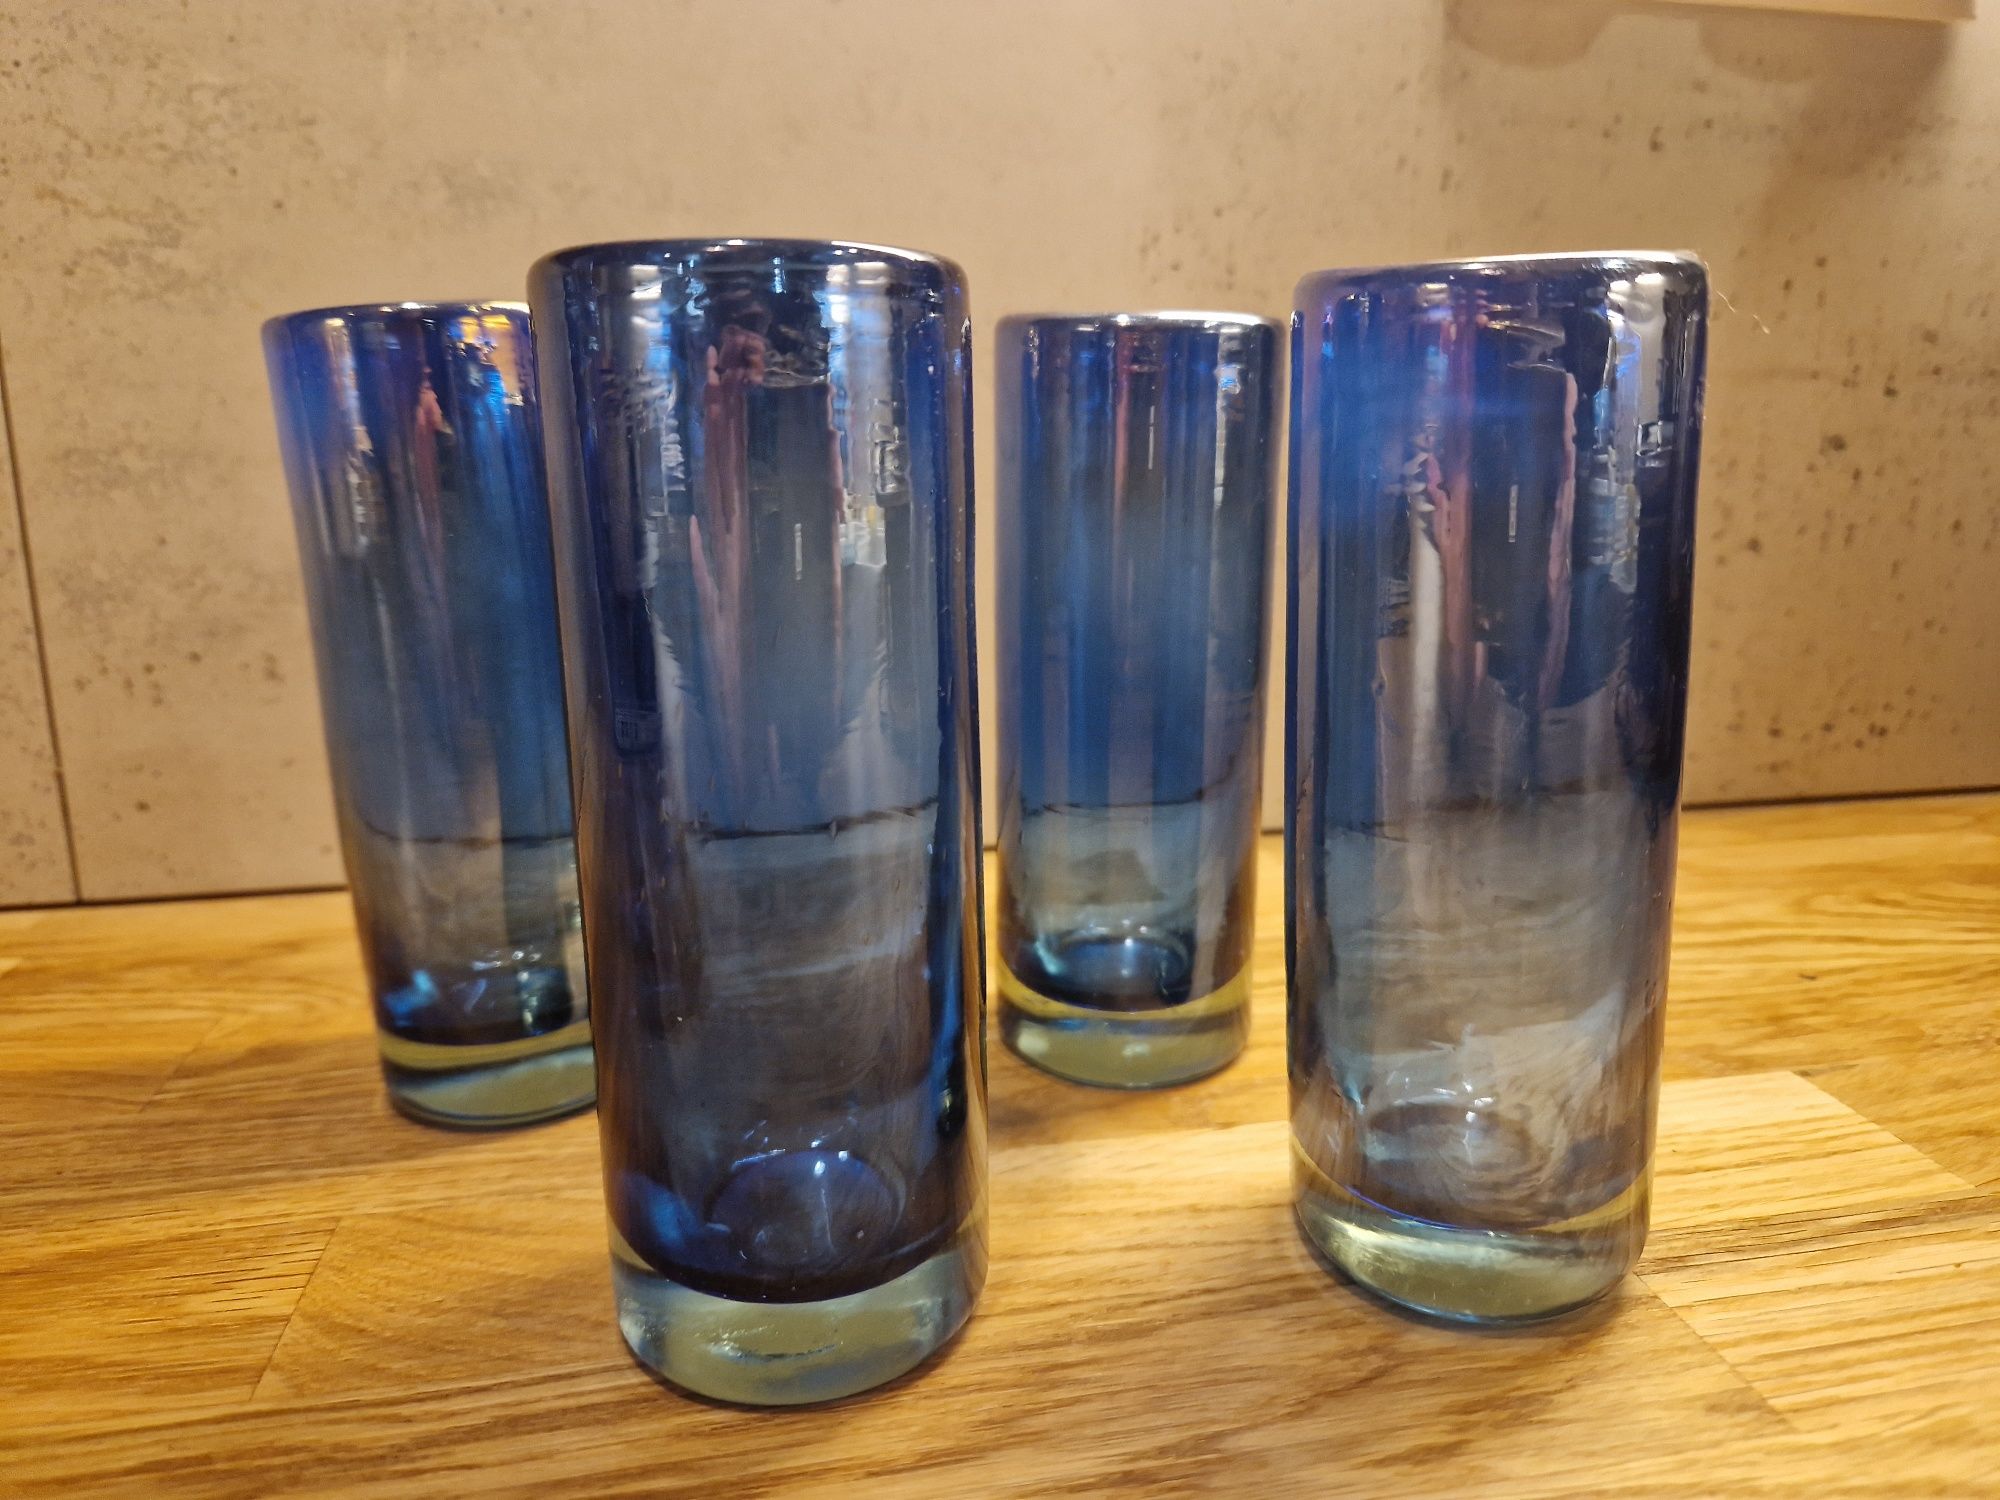 Grube szkło 4 szklaneczki PRL kobaltowe lampiony